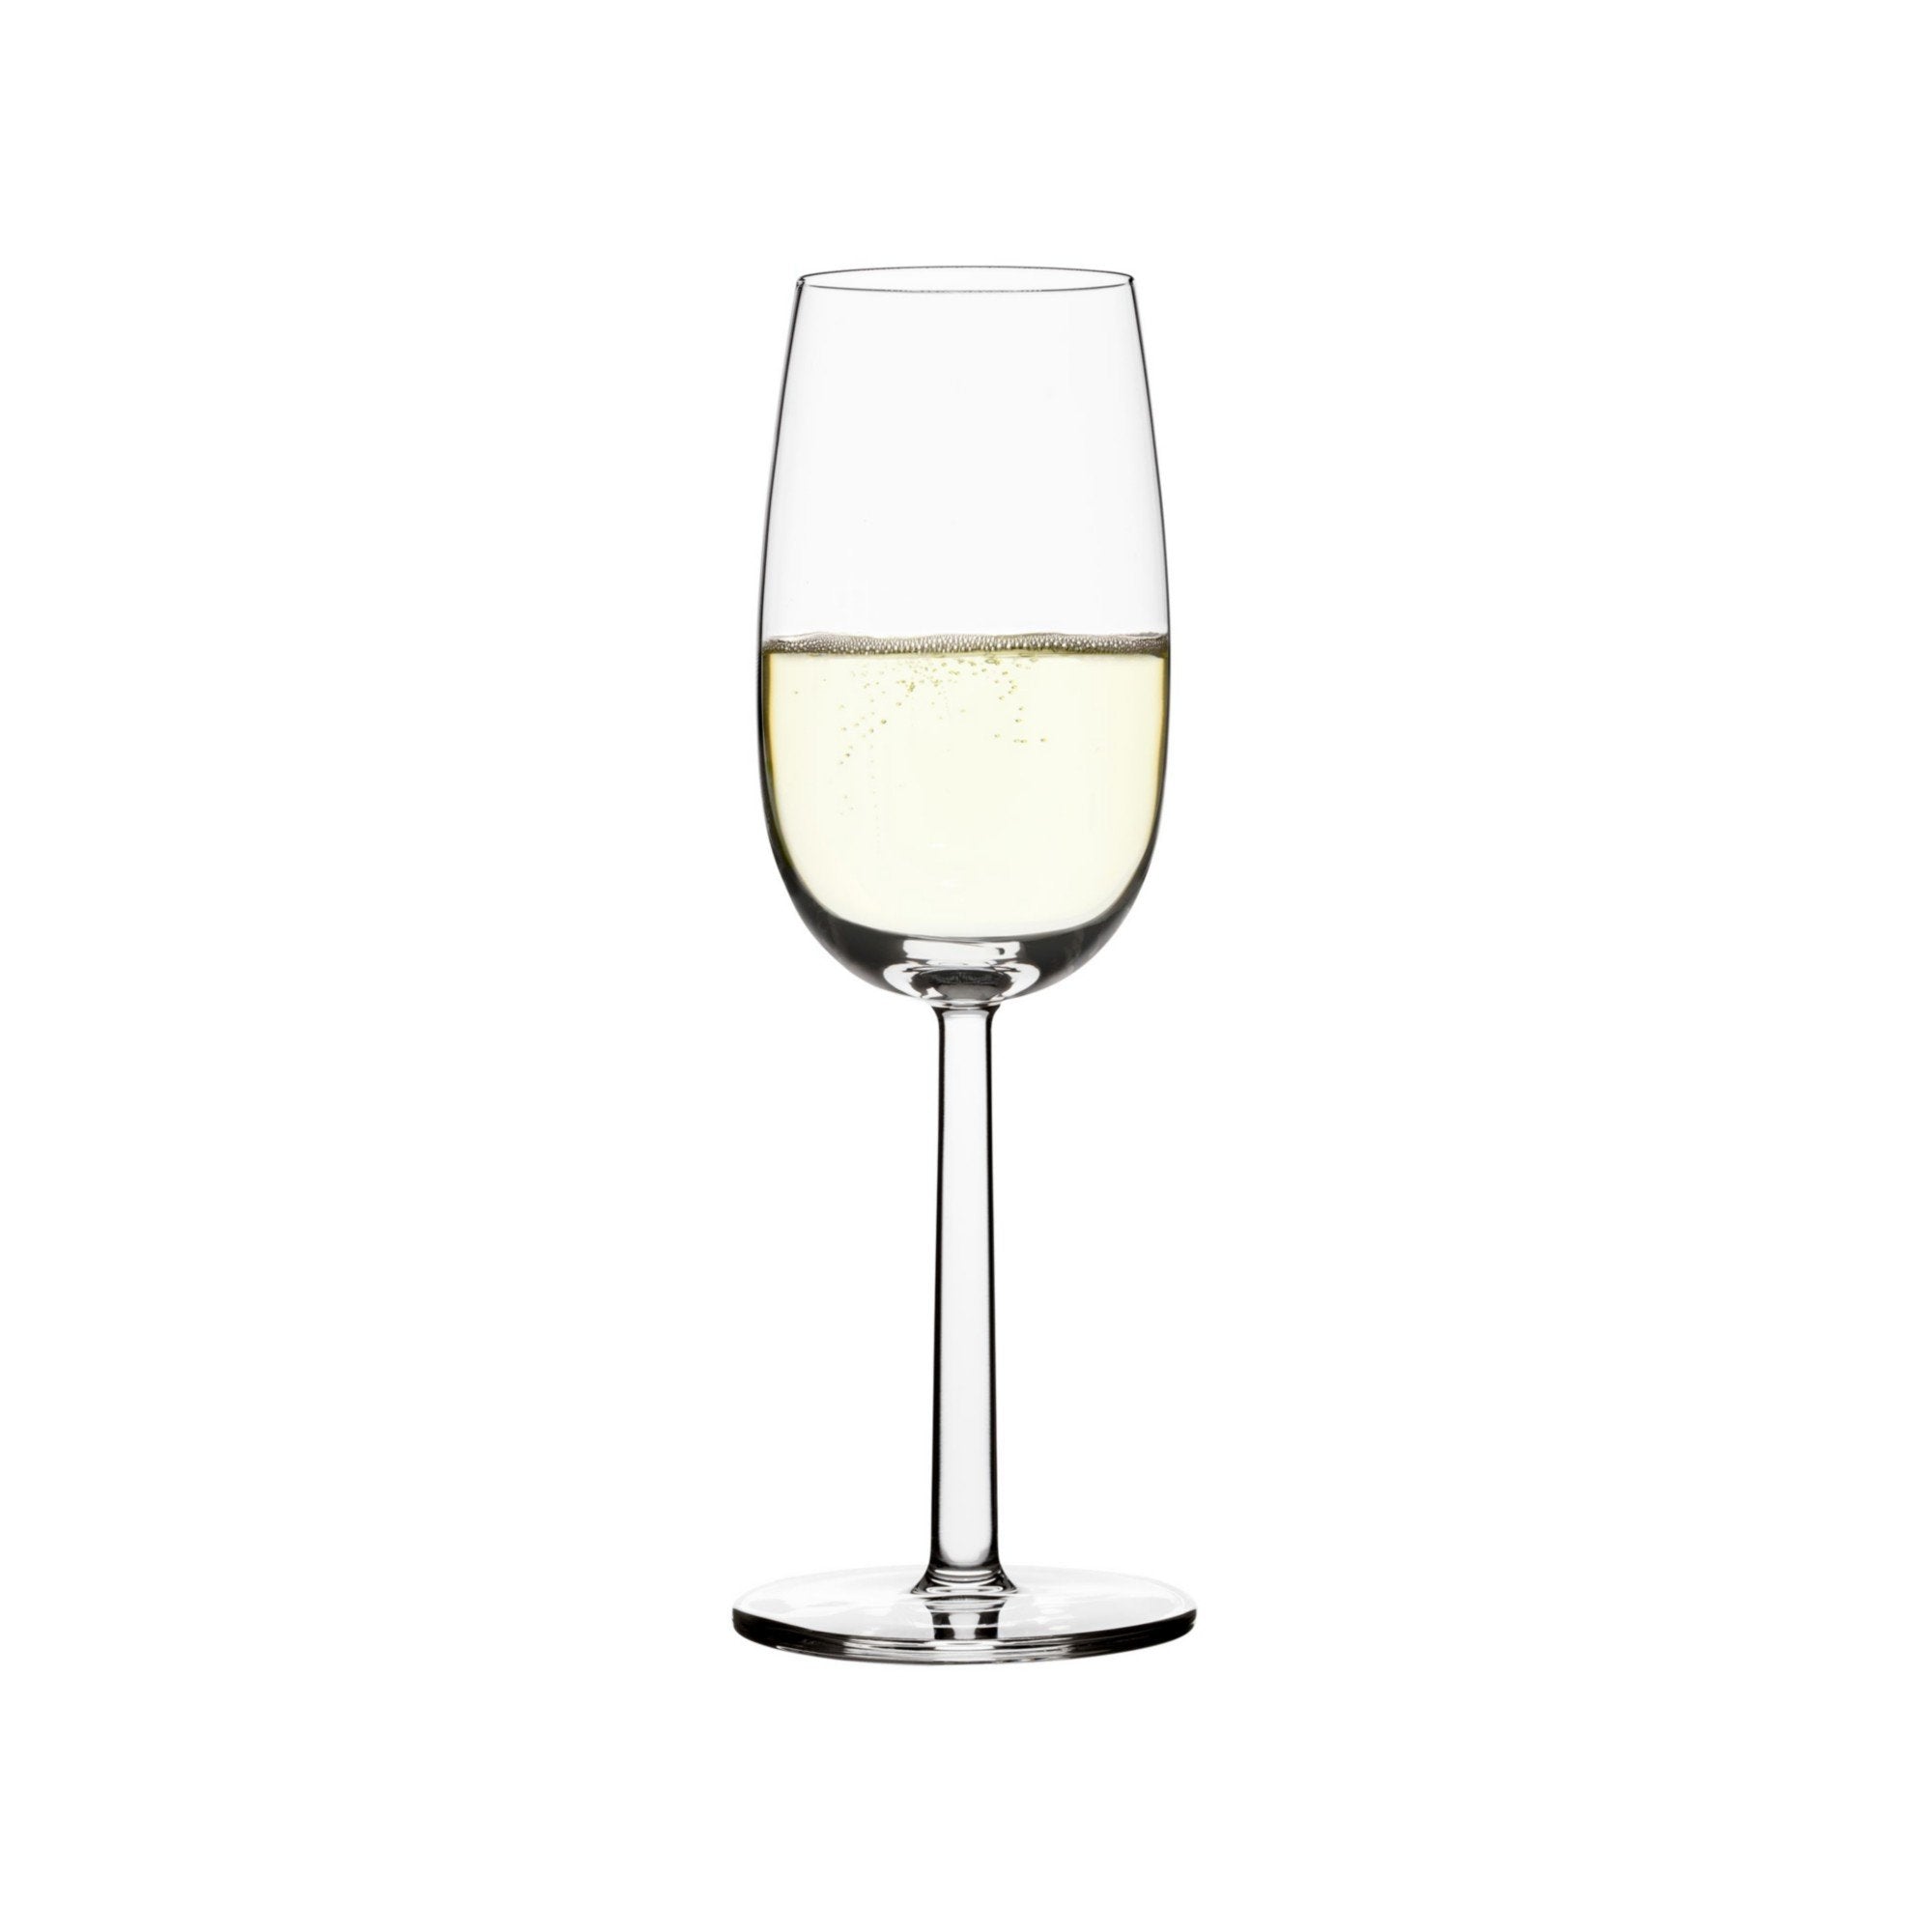 Iittala Raami香槟玻璃透明2pcs，24Cl